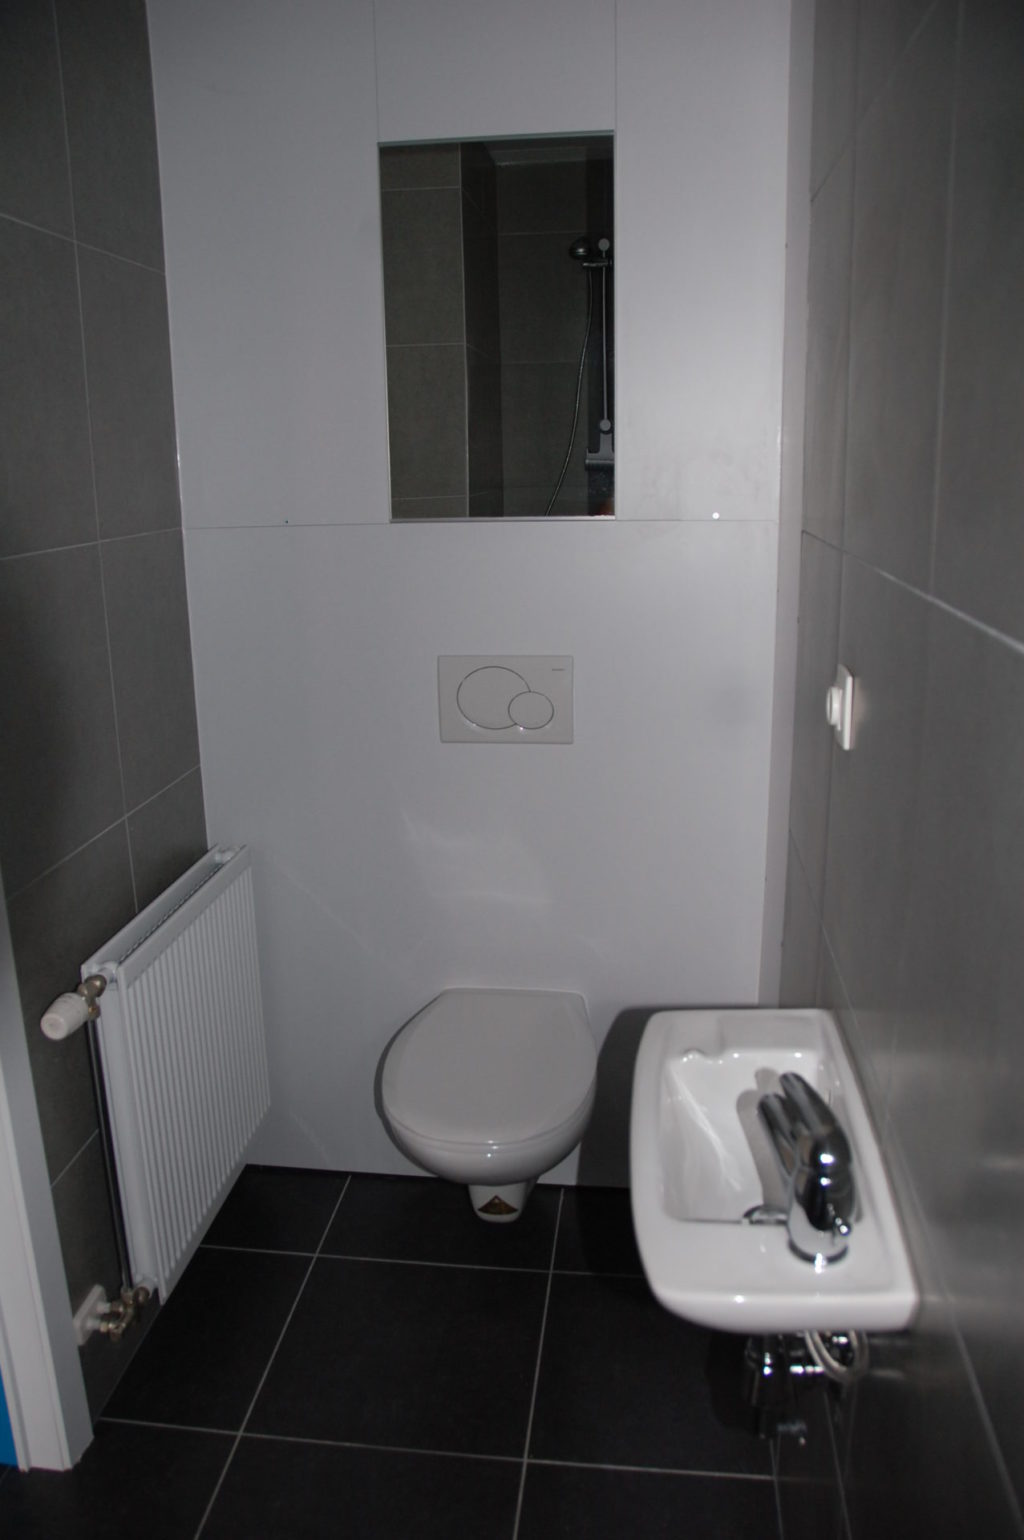 Sint-Jozefsstraat 30 - Kamer 6 - Toilet en lavabo